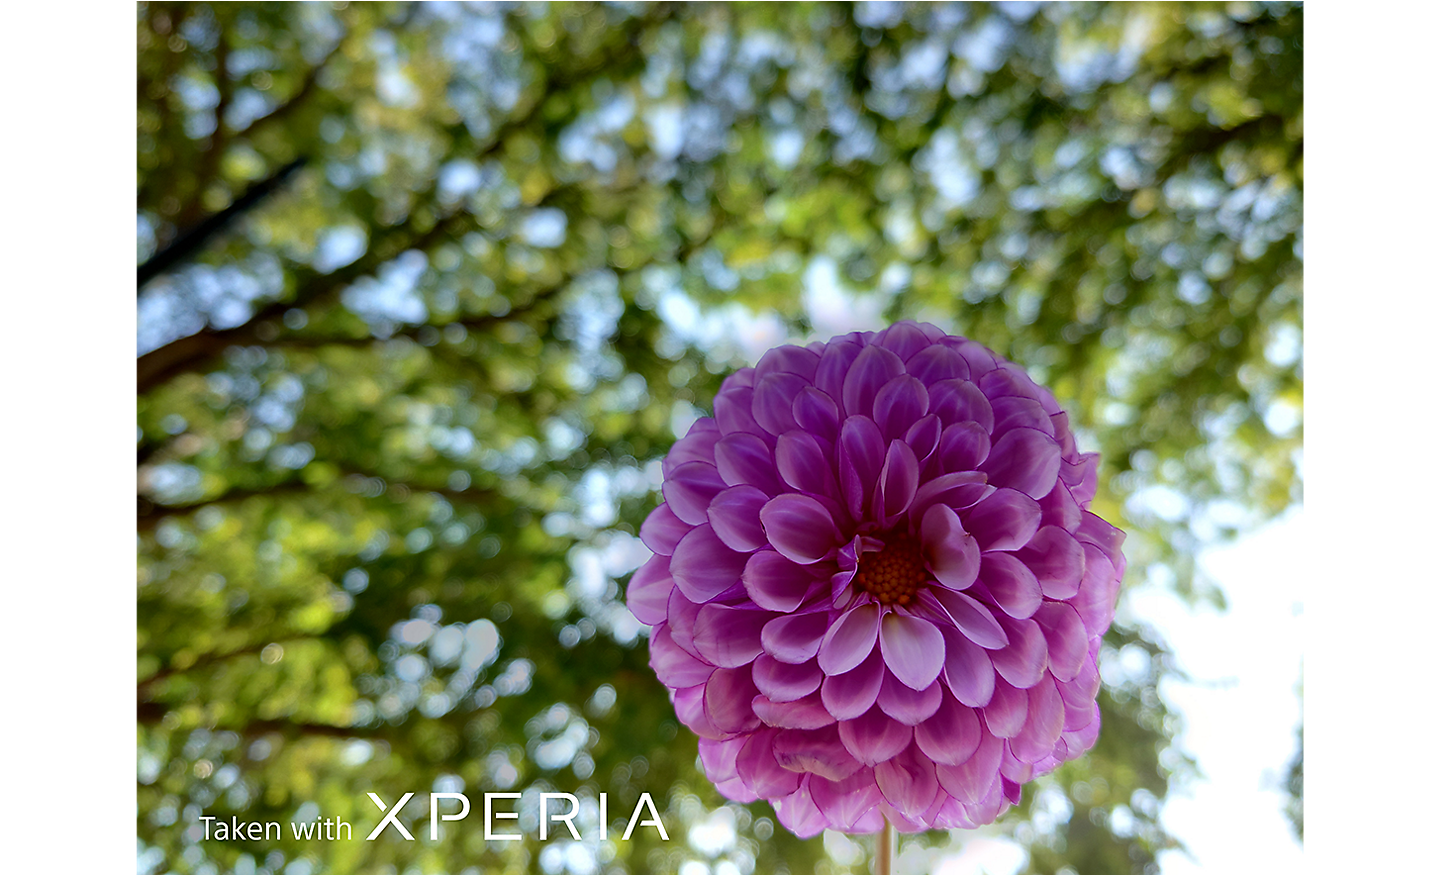 Gros plan sur une fleur rose qui ressort sur un arrière-plan d’arbres feuillus. Le texte indique : « Photo prise avec un XPERIA ».